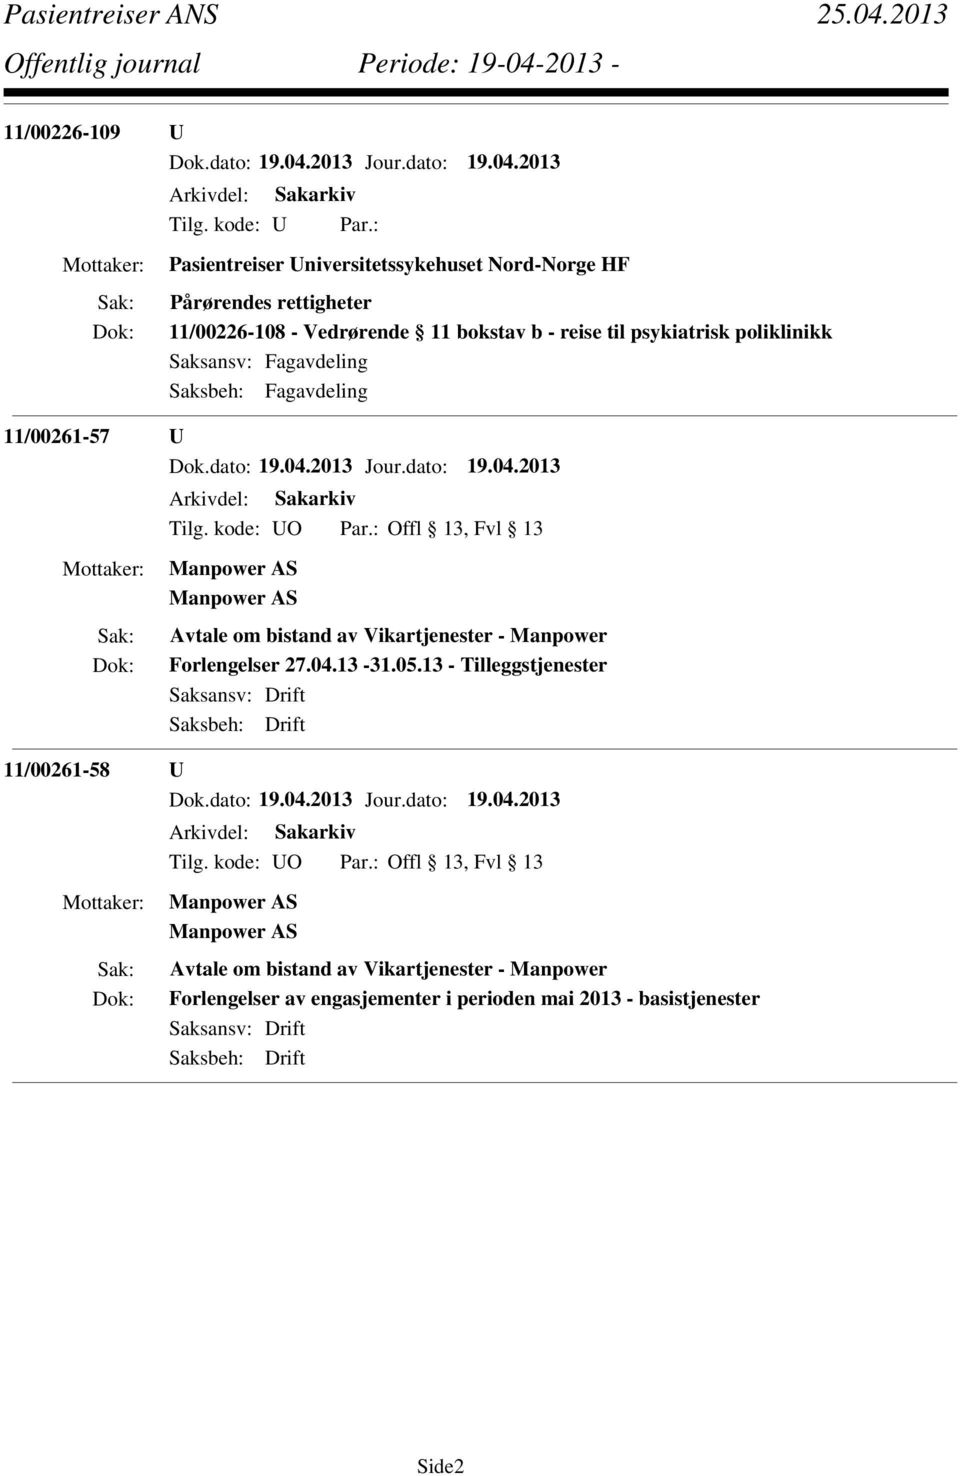 : Offl 13, Fvl 13 Avtale om bistand av Vikartjenester - Manpower Forlengelser 27.04.13-31.05.